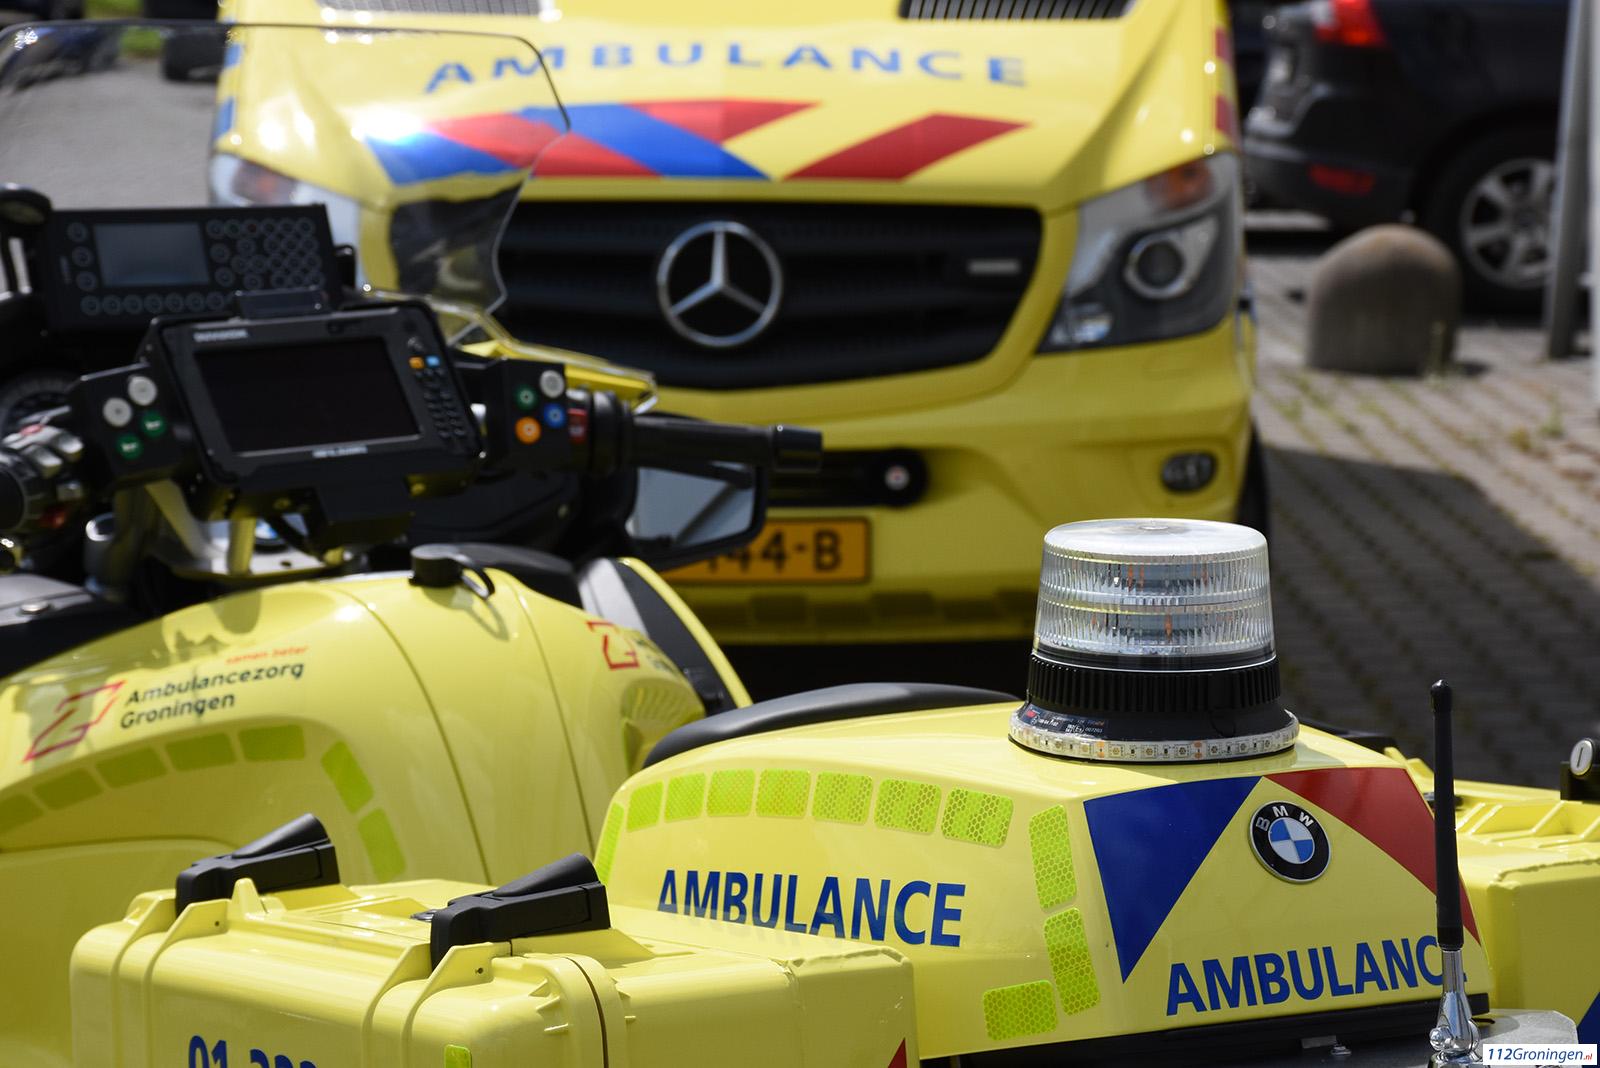 Man uit Groningen overleden door ernstig ongeluk in Assen. Minderjarige zwaargewond.